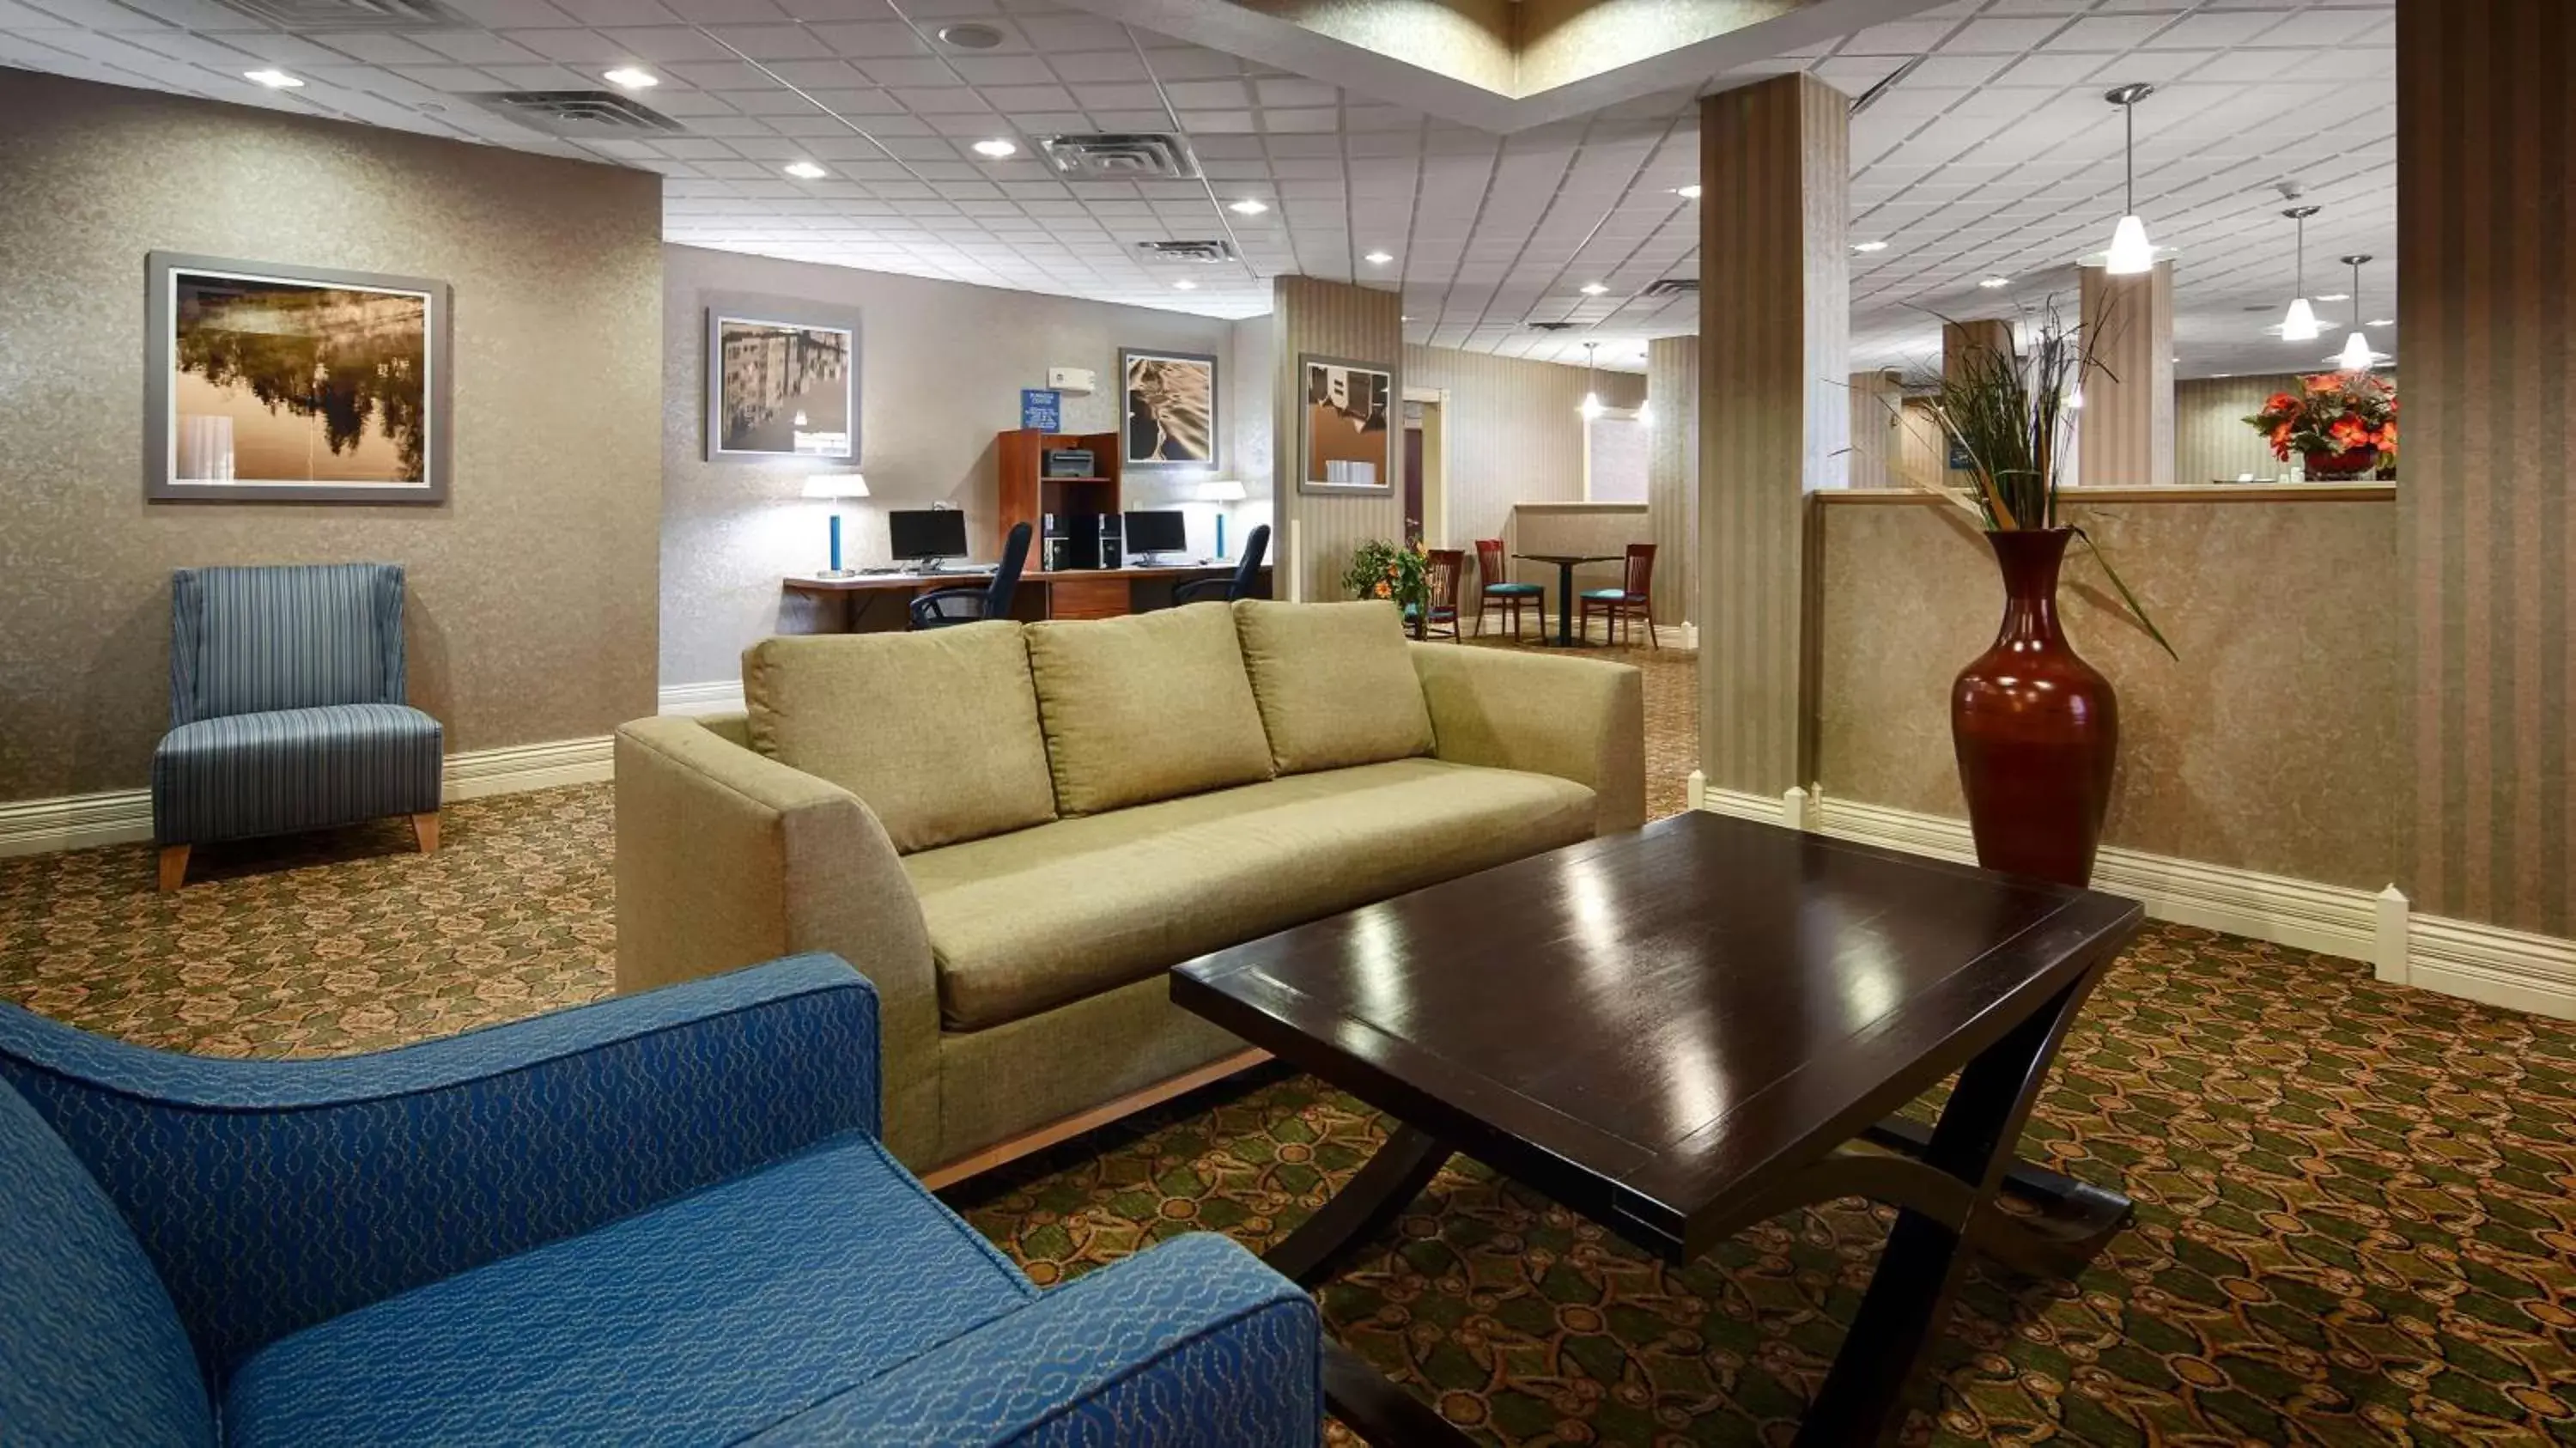 Lobby or reception in Best Western Plus Kalamazoo Suites